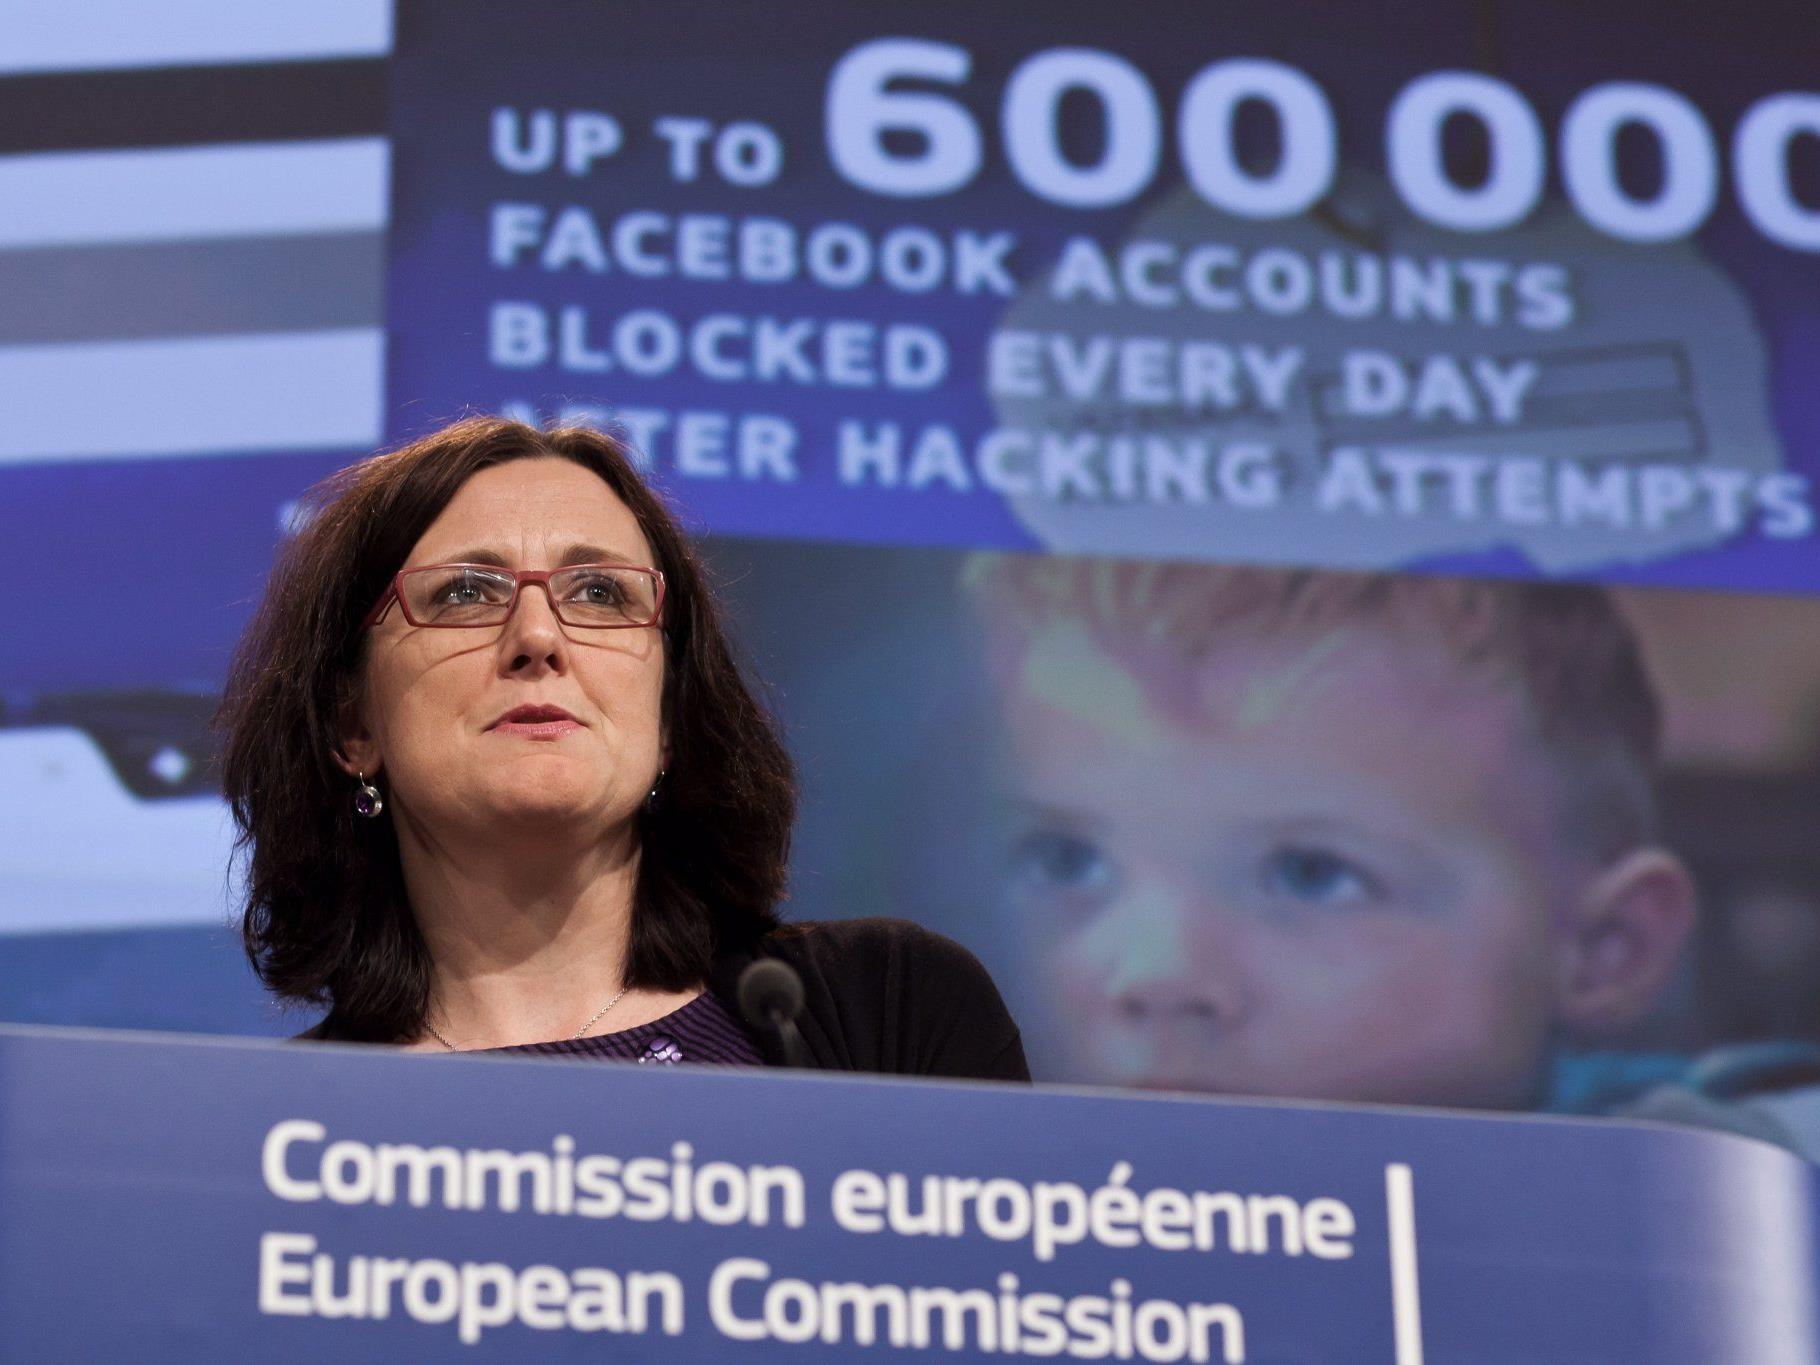 Jeden Tag würden mehr als 600.000 Facebook-Konten nach Hacker-Attacken blockiert, so EU-Kommissarin Cecilia Malmström.